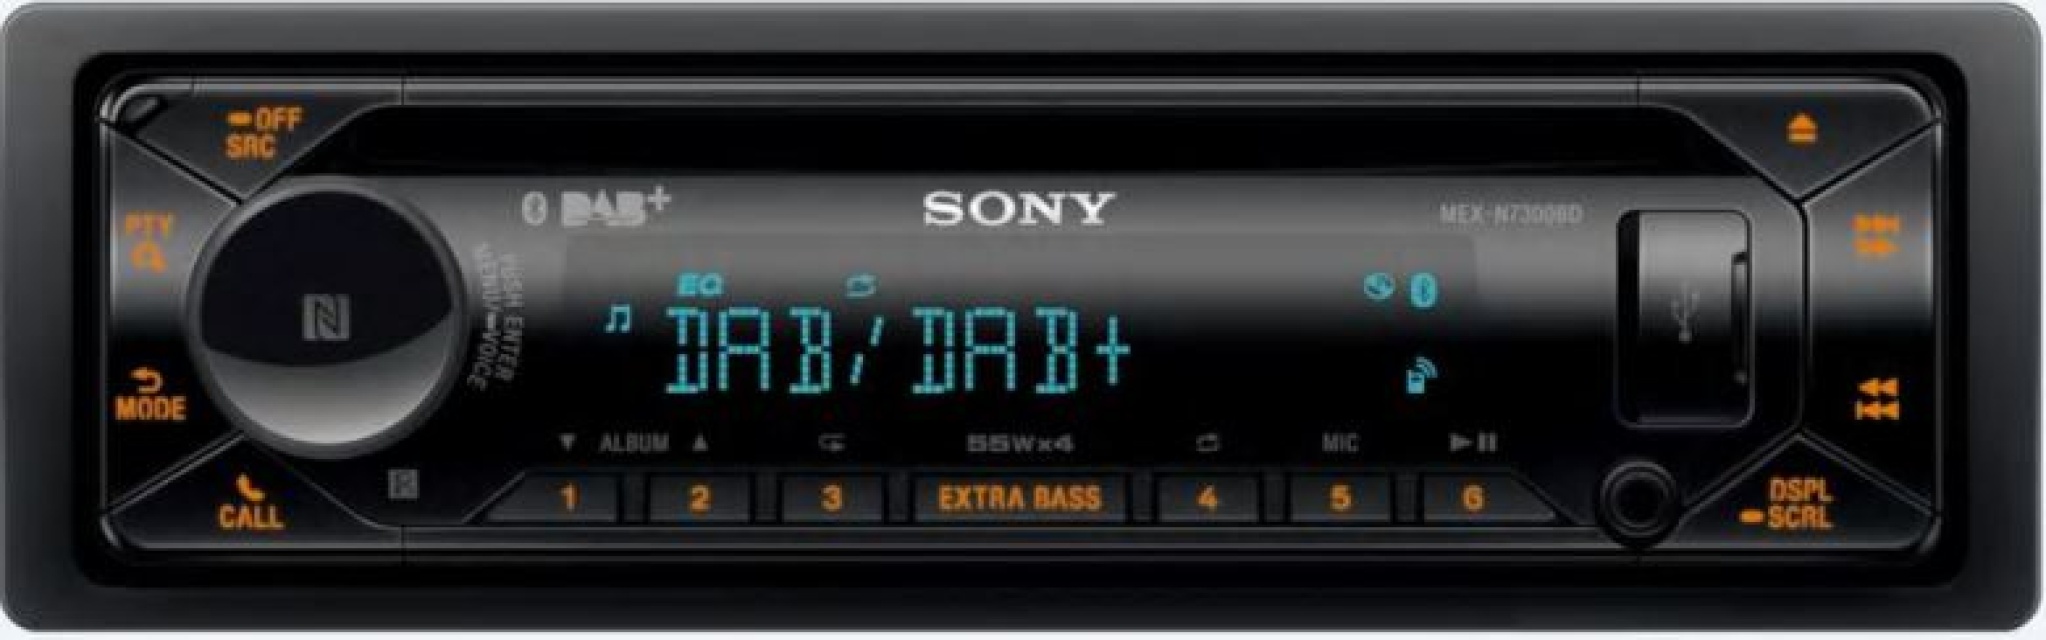 Sony MEX-N7300BD, bilstereo med Bluetooth, DAB+ och 3 par lågnivå